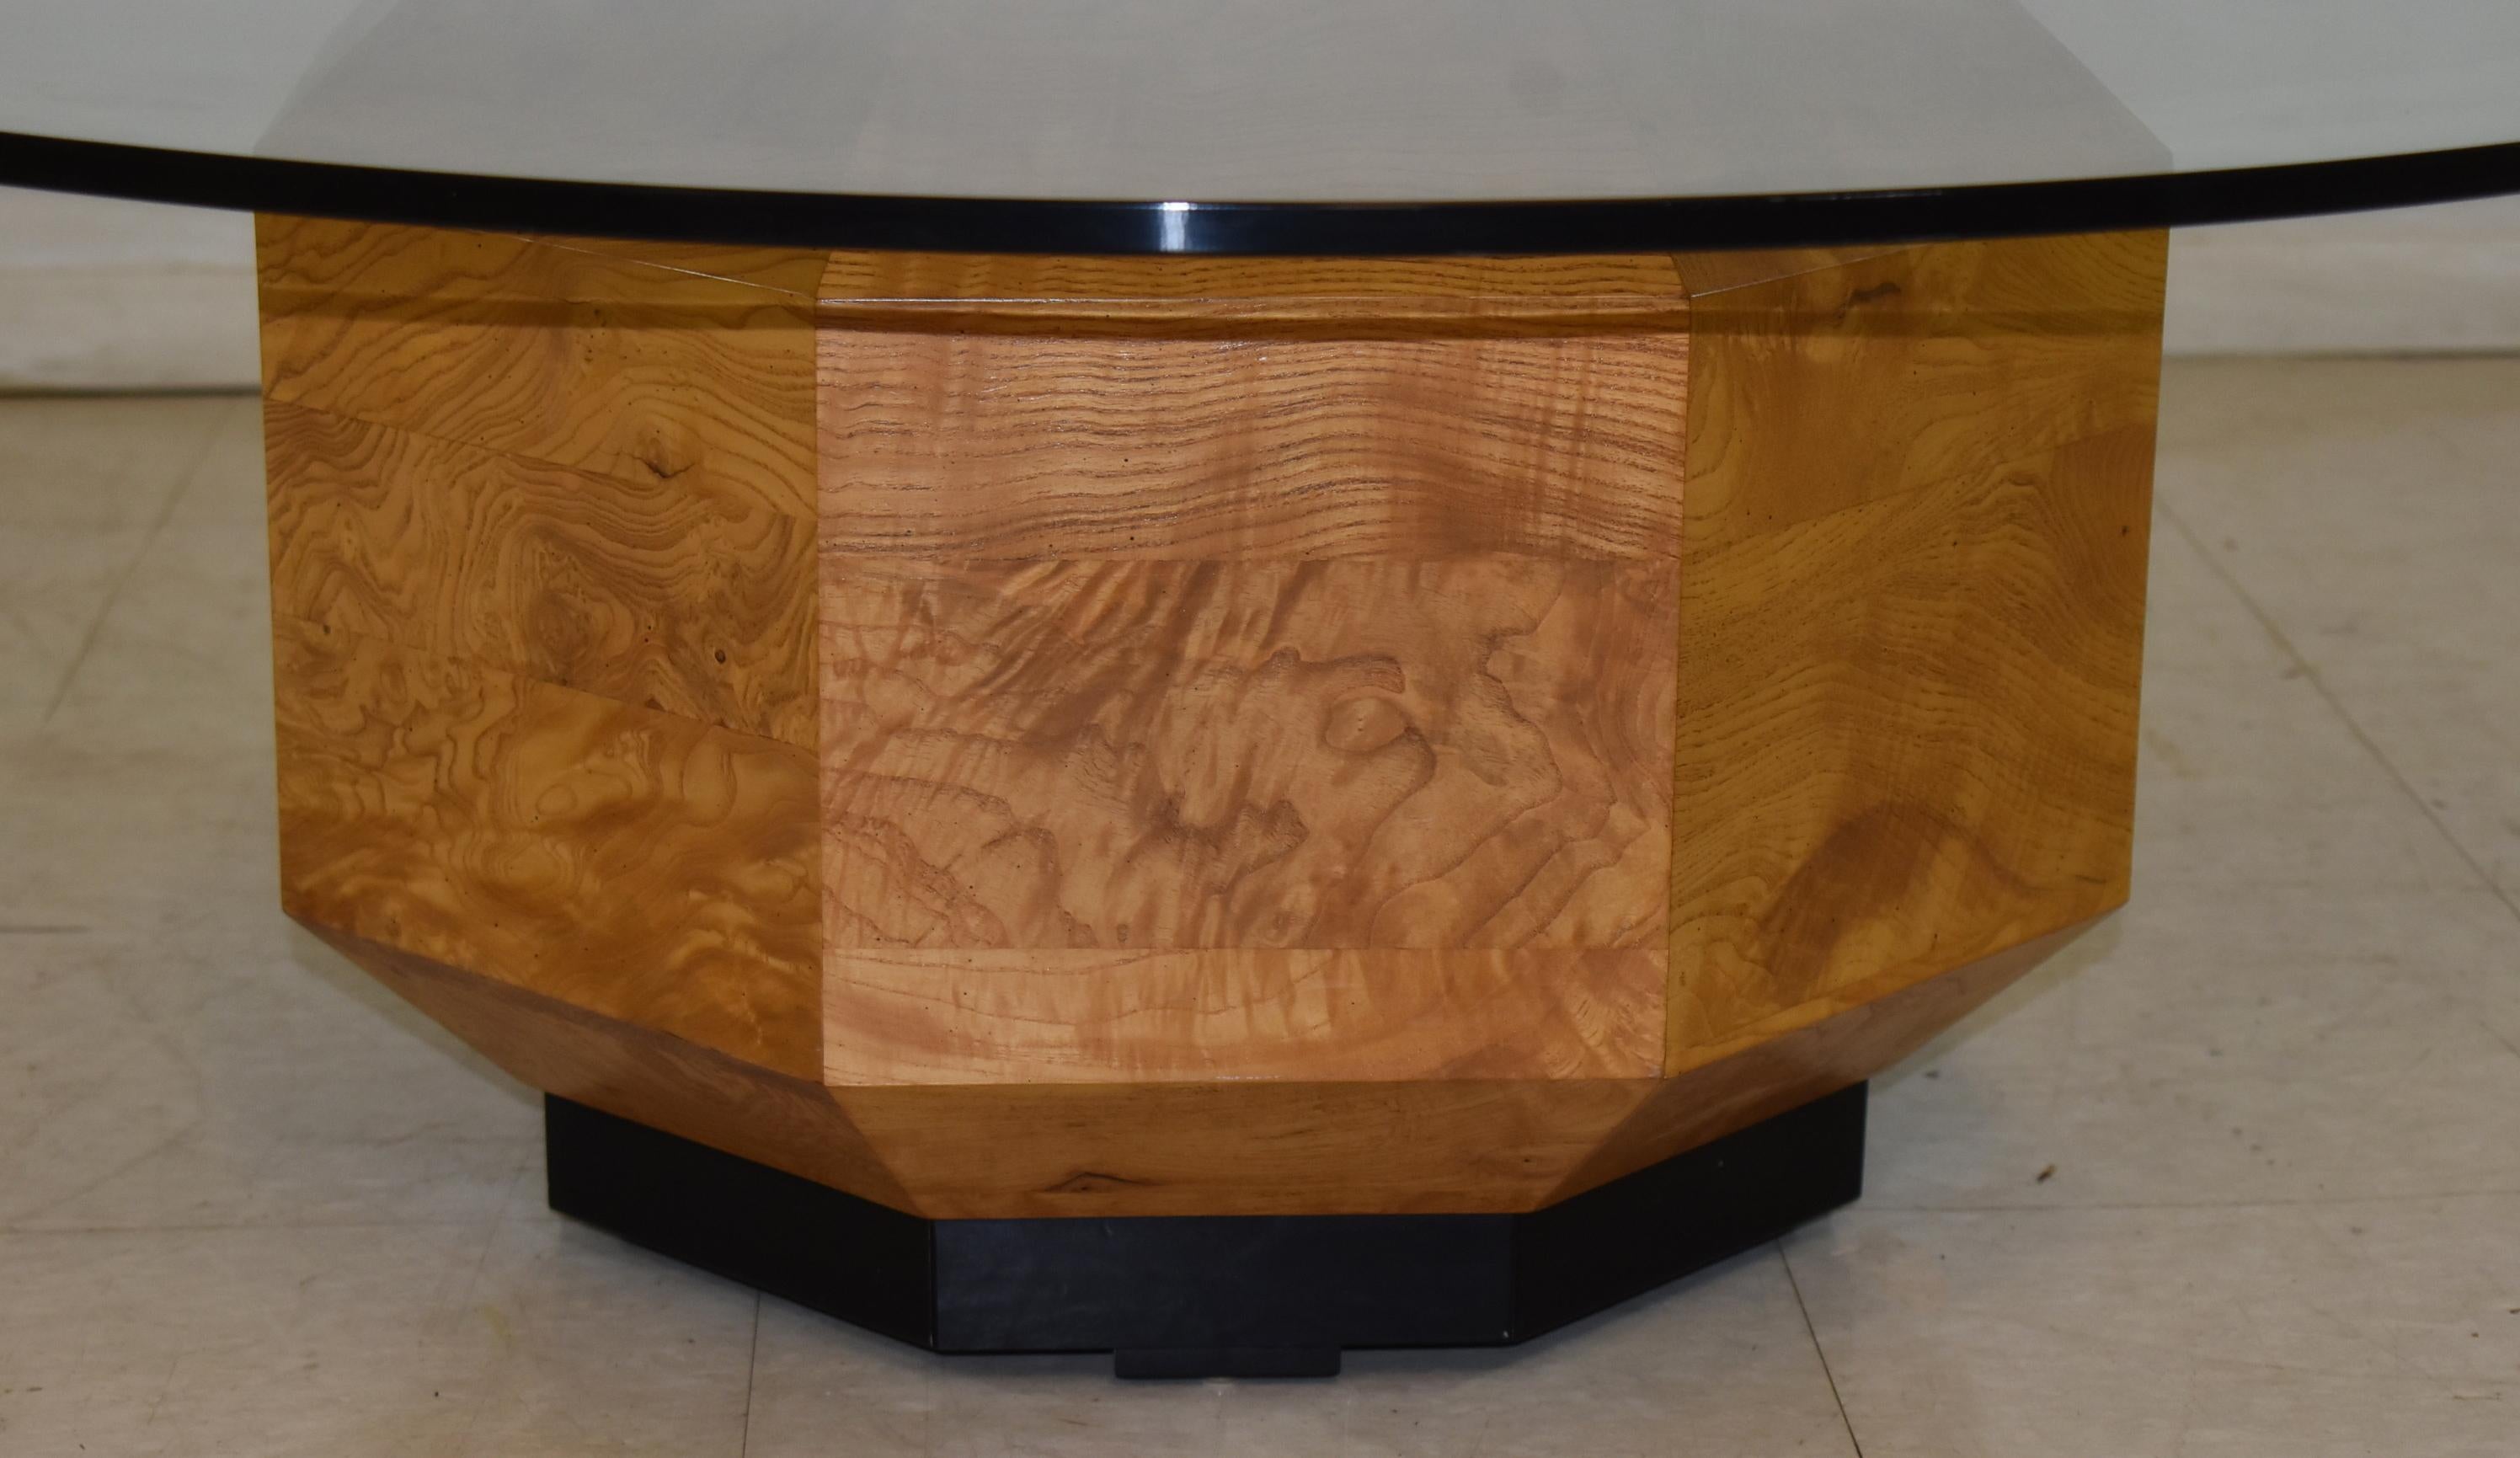 Table basse Hekman en ronce de bois hexagonale avec plateau circulaire en verre. En excellent état, sans aucune rayure. Dimensions : 16